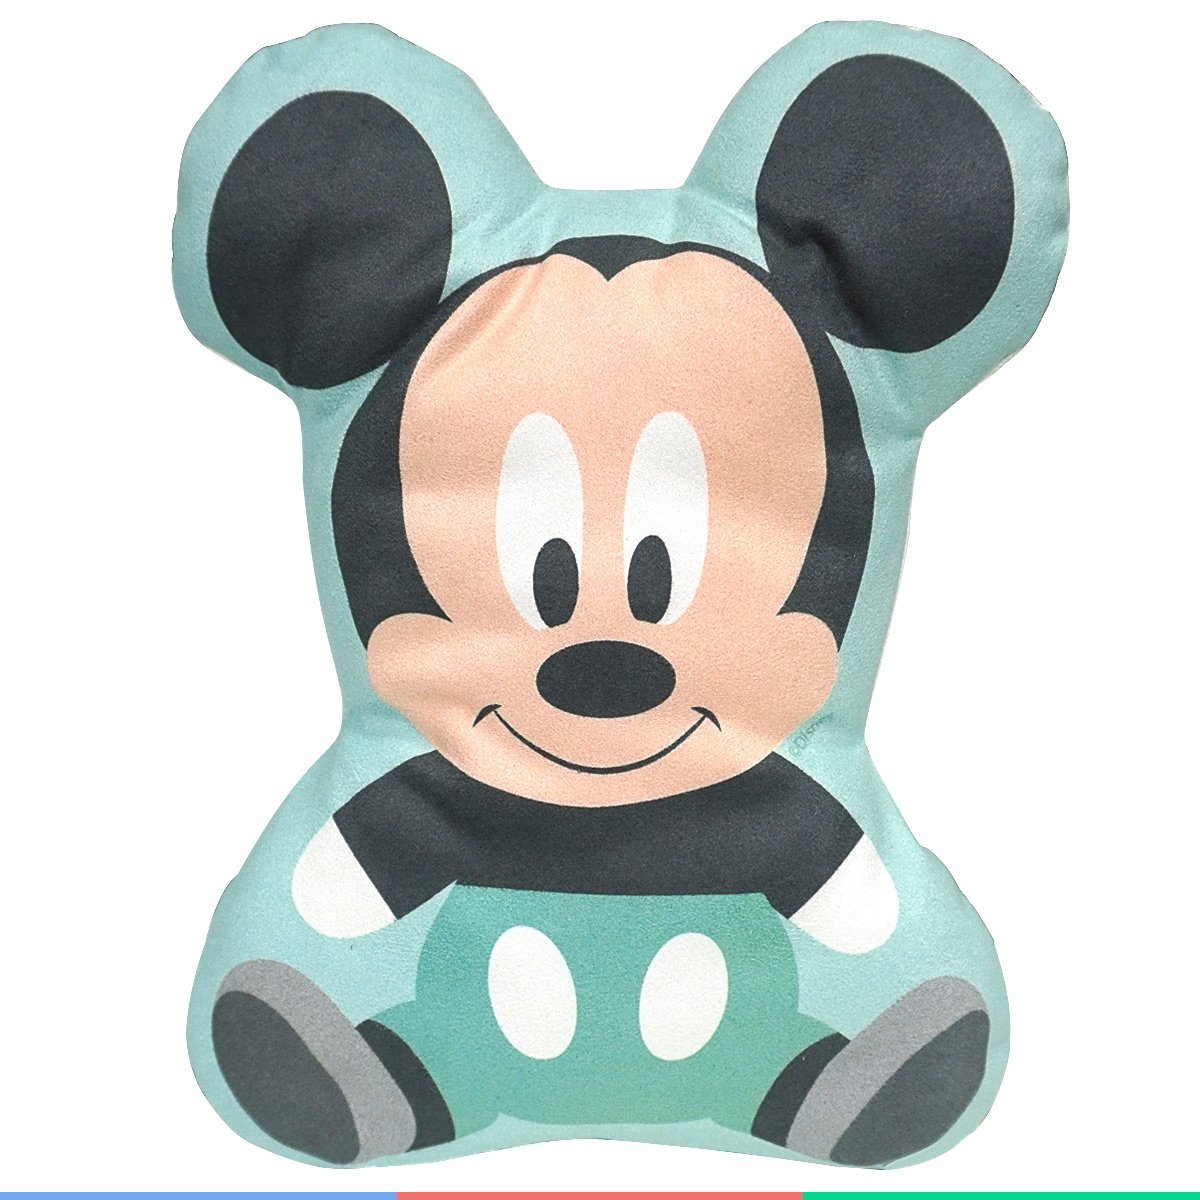 Almofada 2D Berço Bebê Recém Nascido Infantil Macio Lavável Disney Mickey BabyGo Baby Go Almofada -  - 5